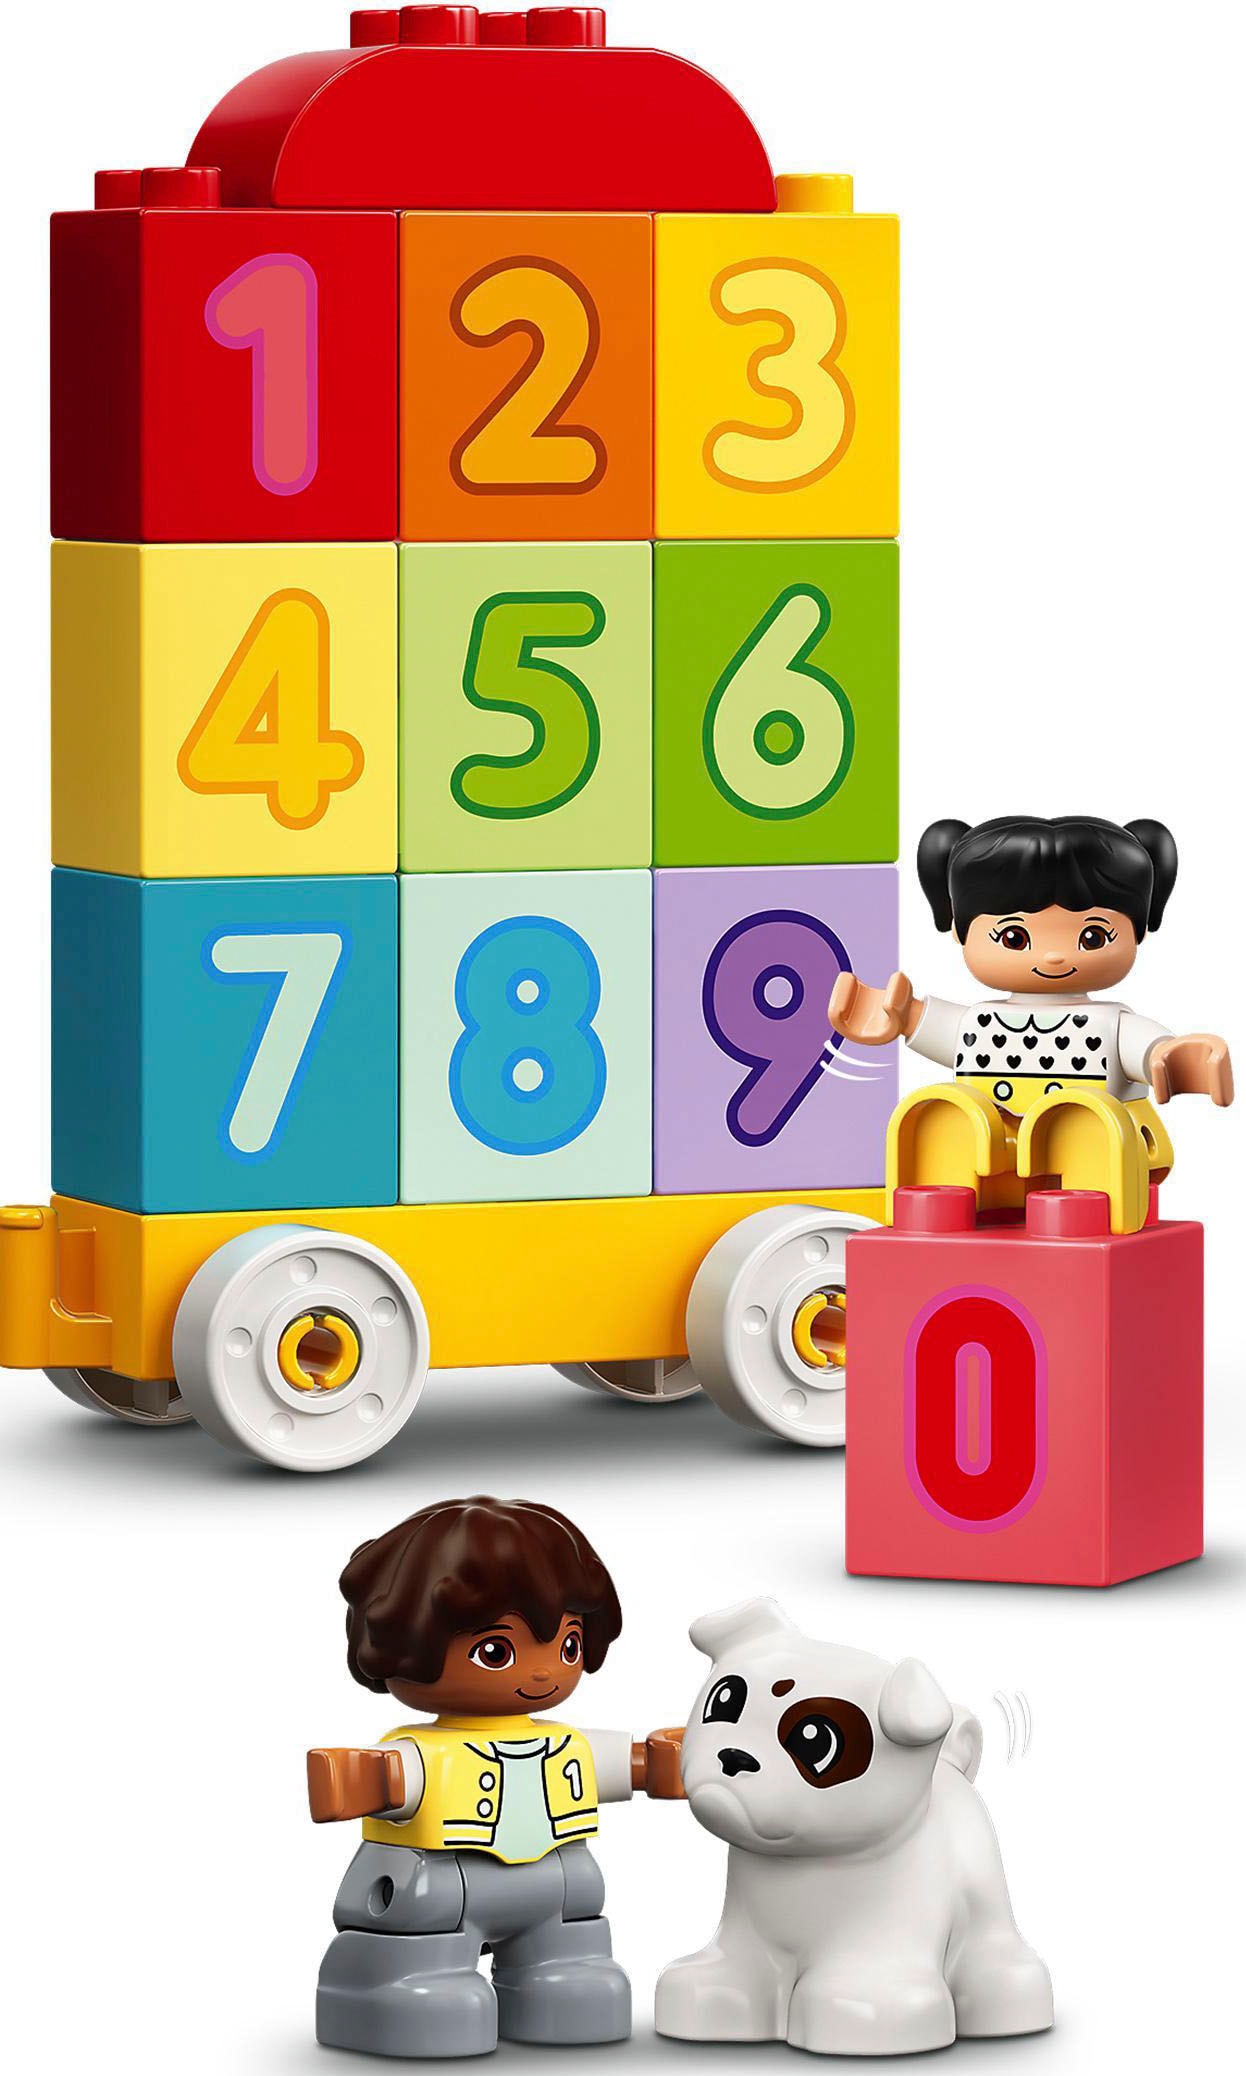 »Zahlenzug St.) bei Play«, – Zählen (10954), Creative Konstruktionsspielsteine lernen (23 DUPLO® LEGO® LEGO®